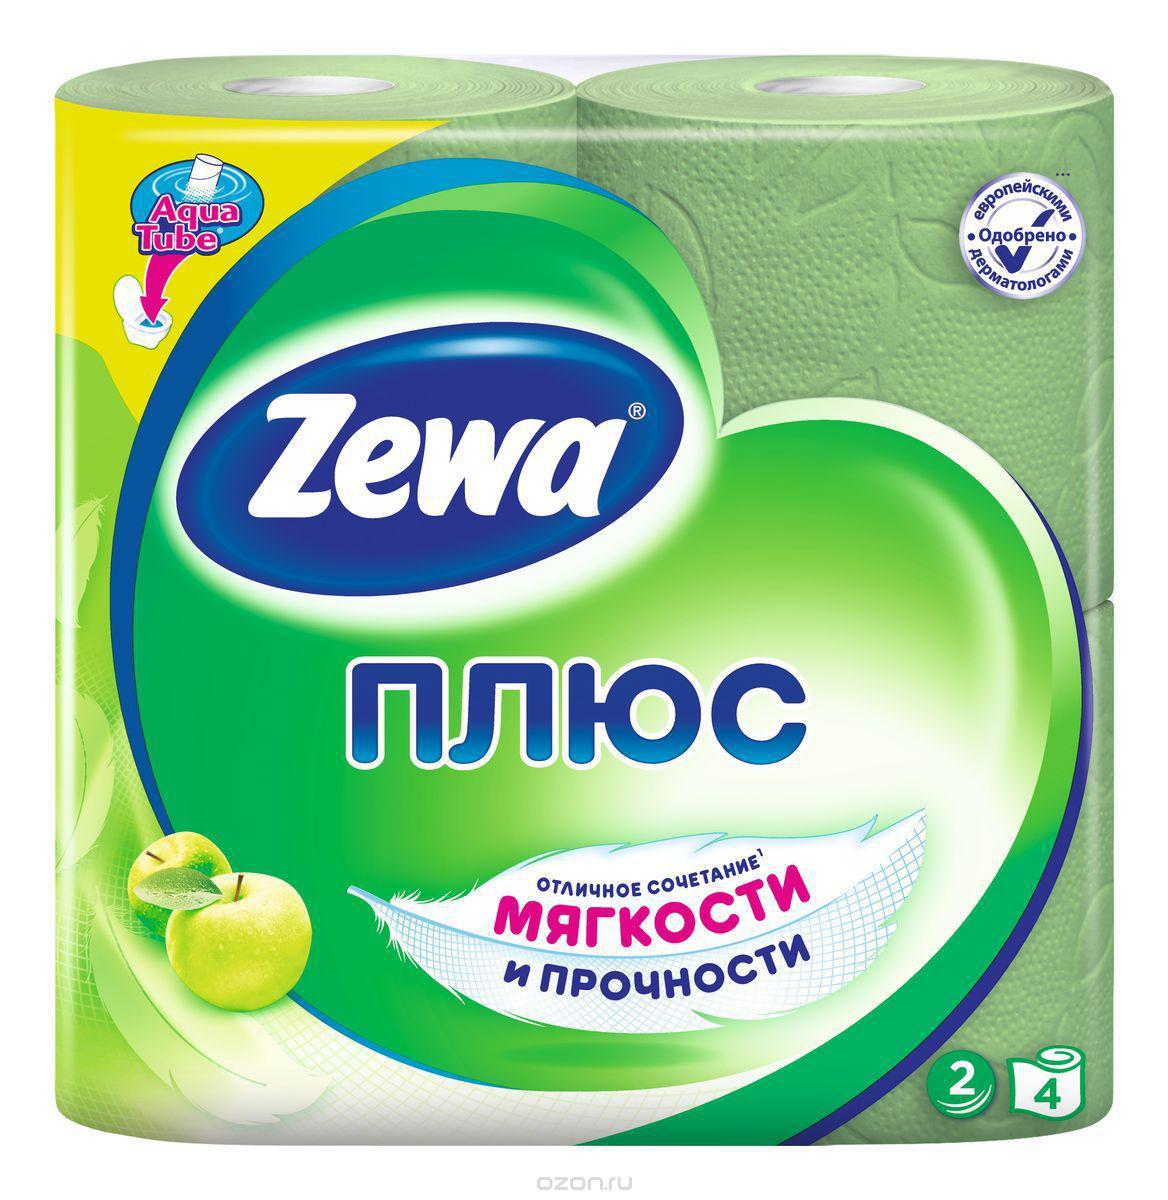 Туалетная бумага "Zewa Плюс" двухслойная,  с ароматом яблока, 4рул./упак. (Цена с НДС)